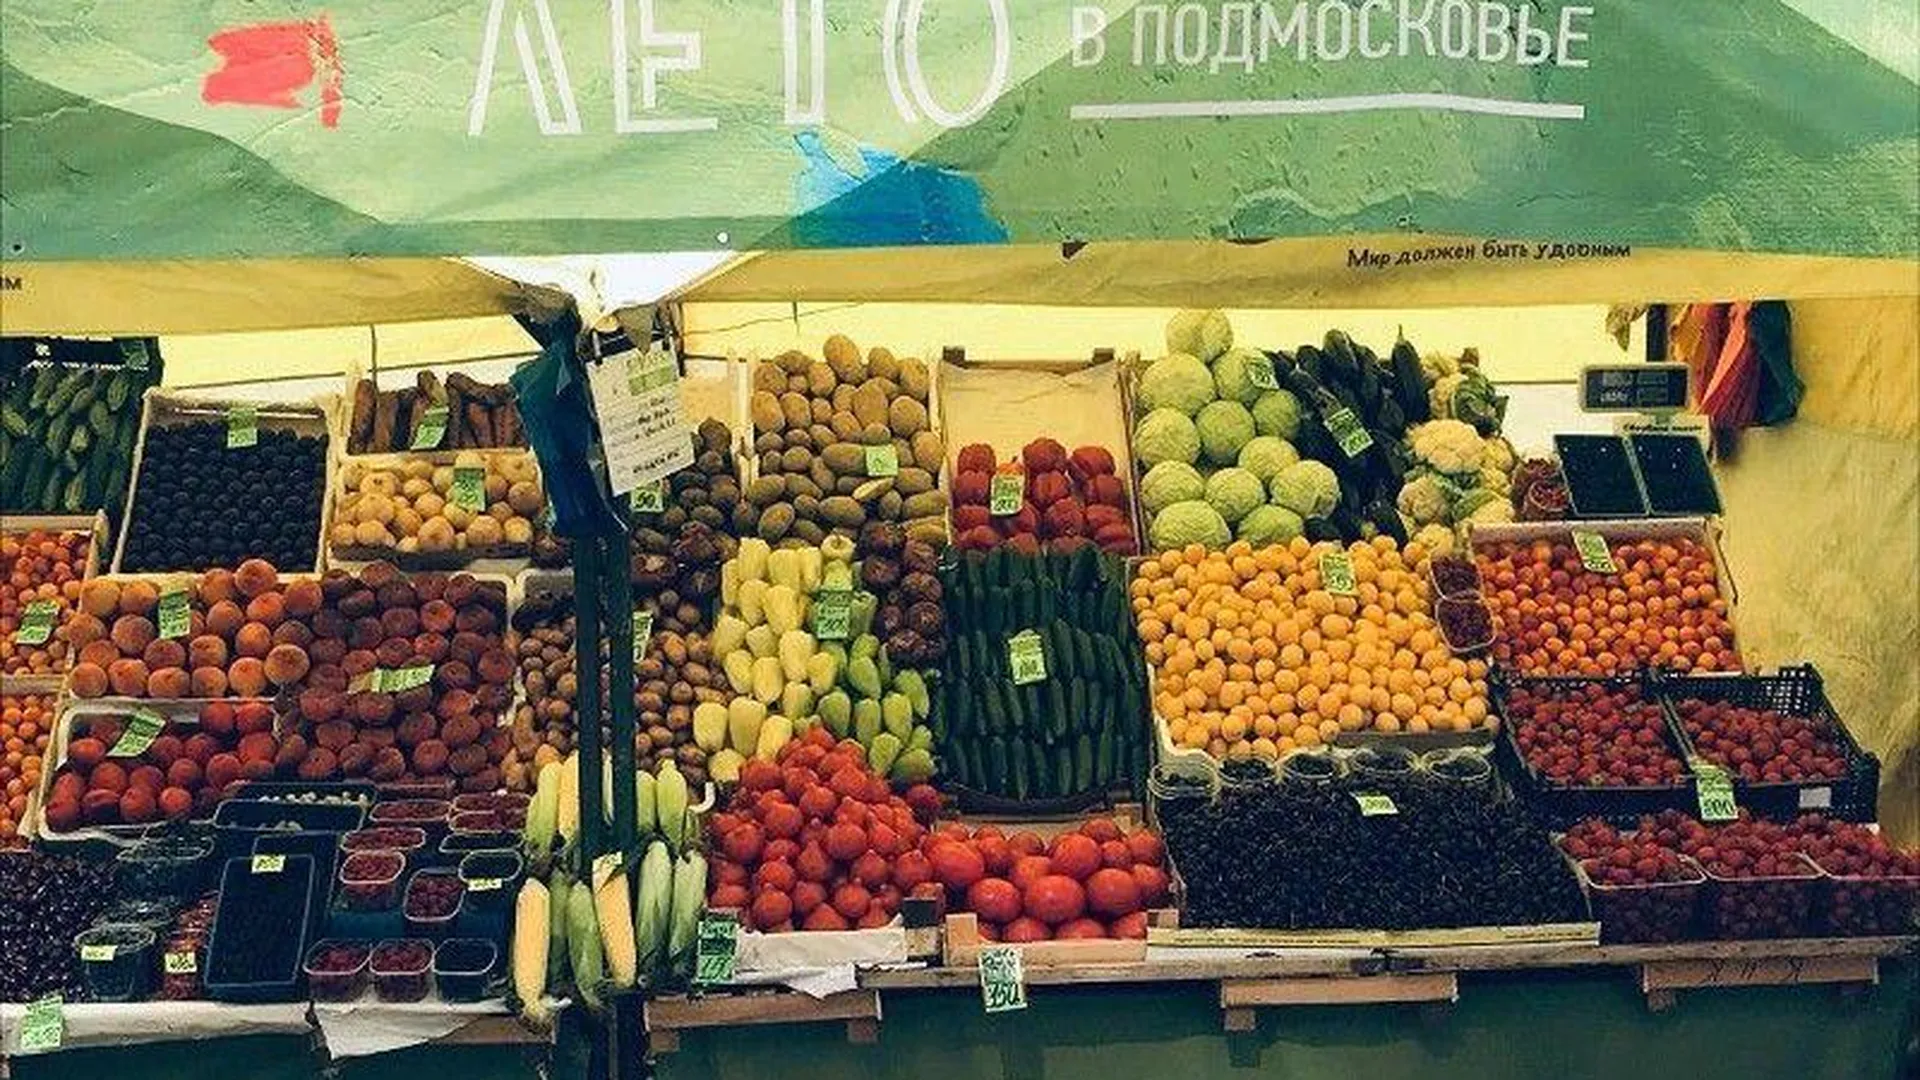 Тематические ярмарки ко Дню работника торговли прошли в Подмосковье